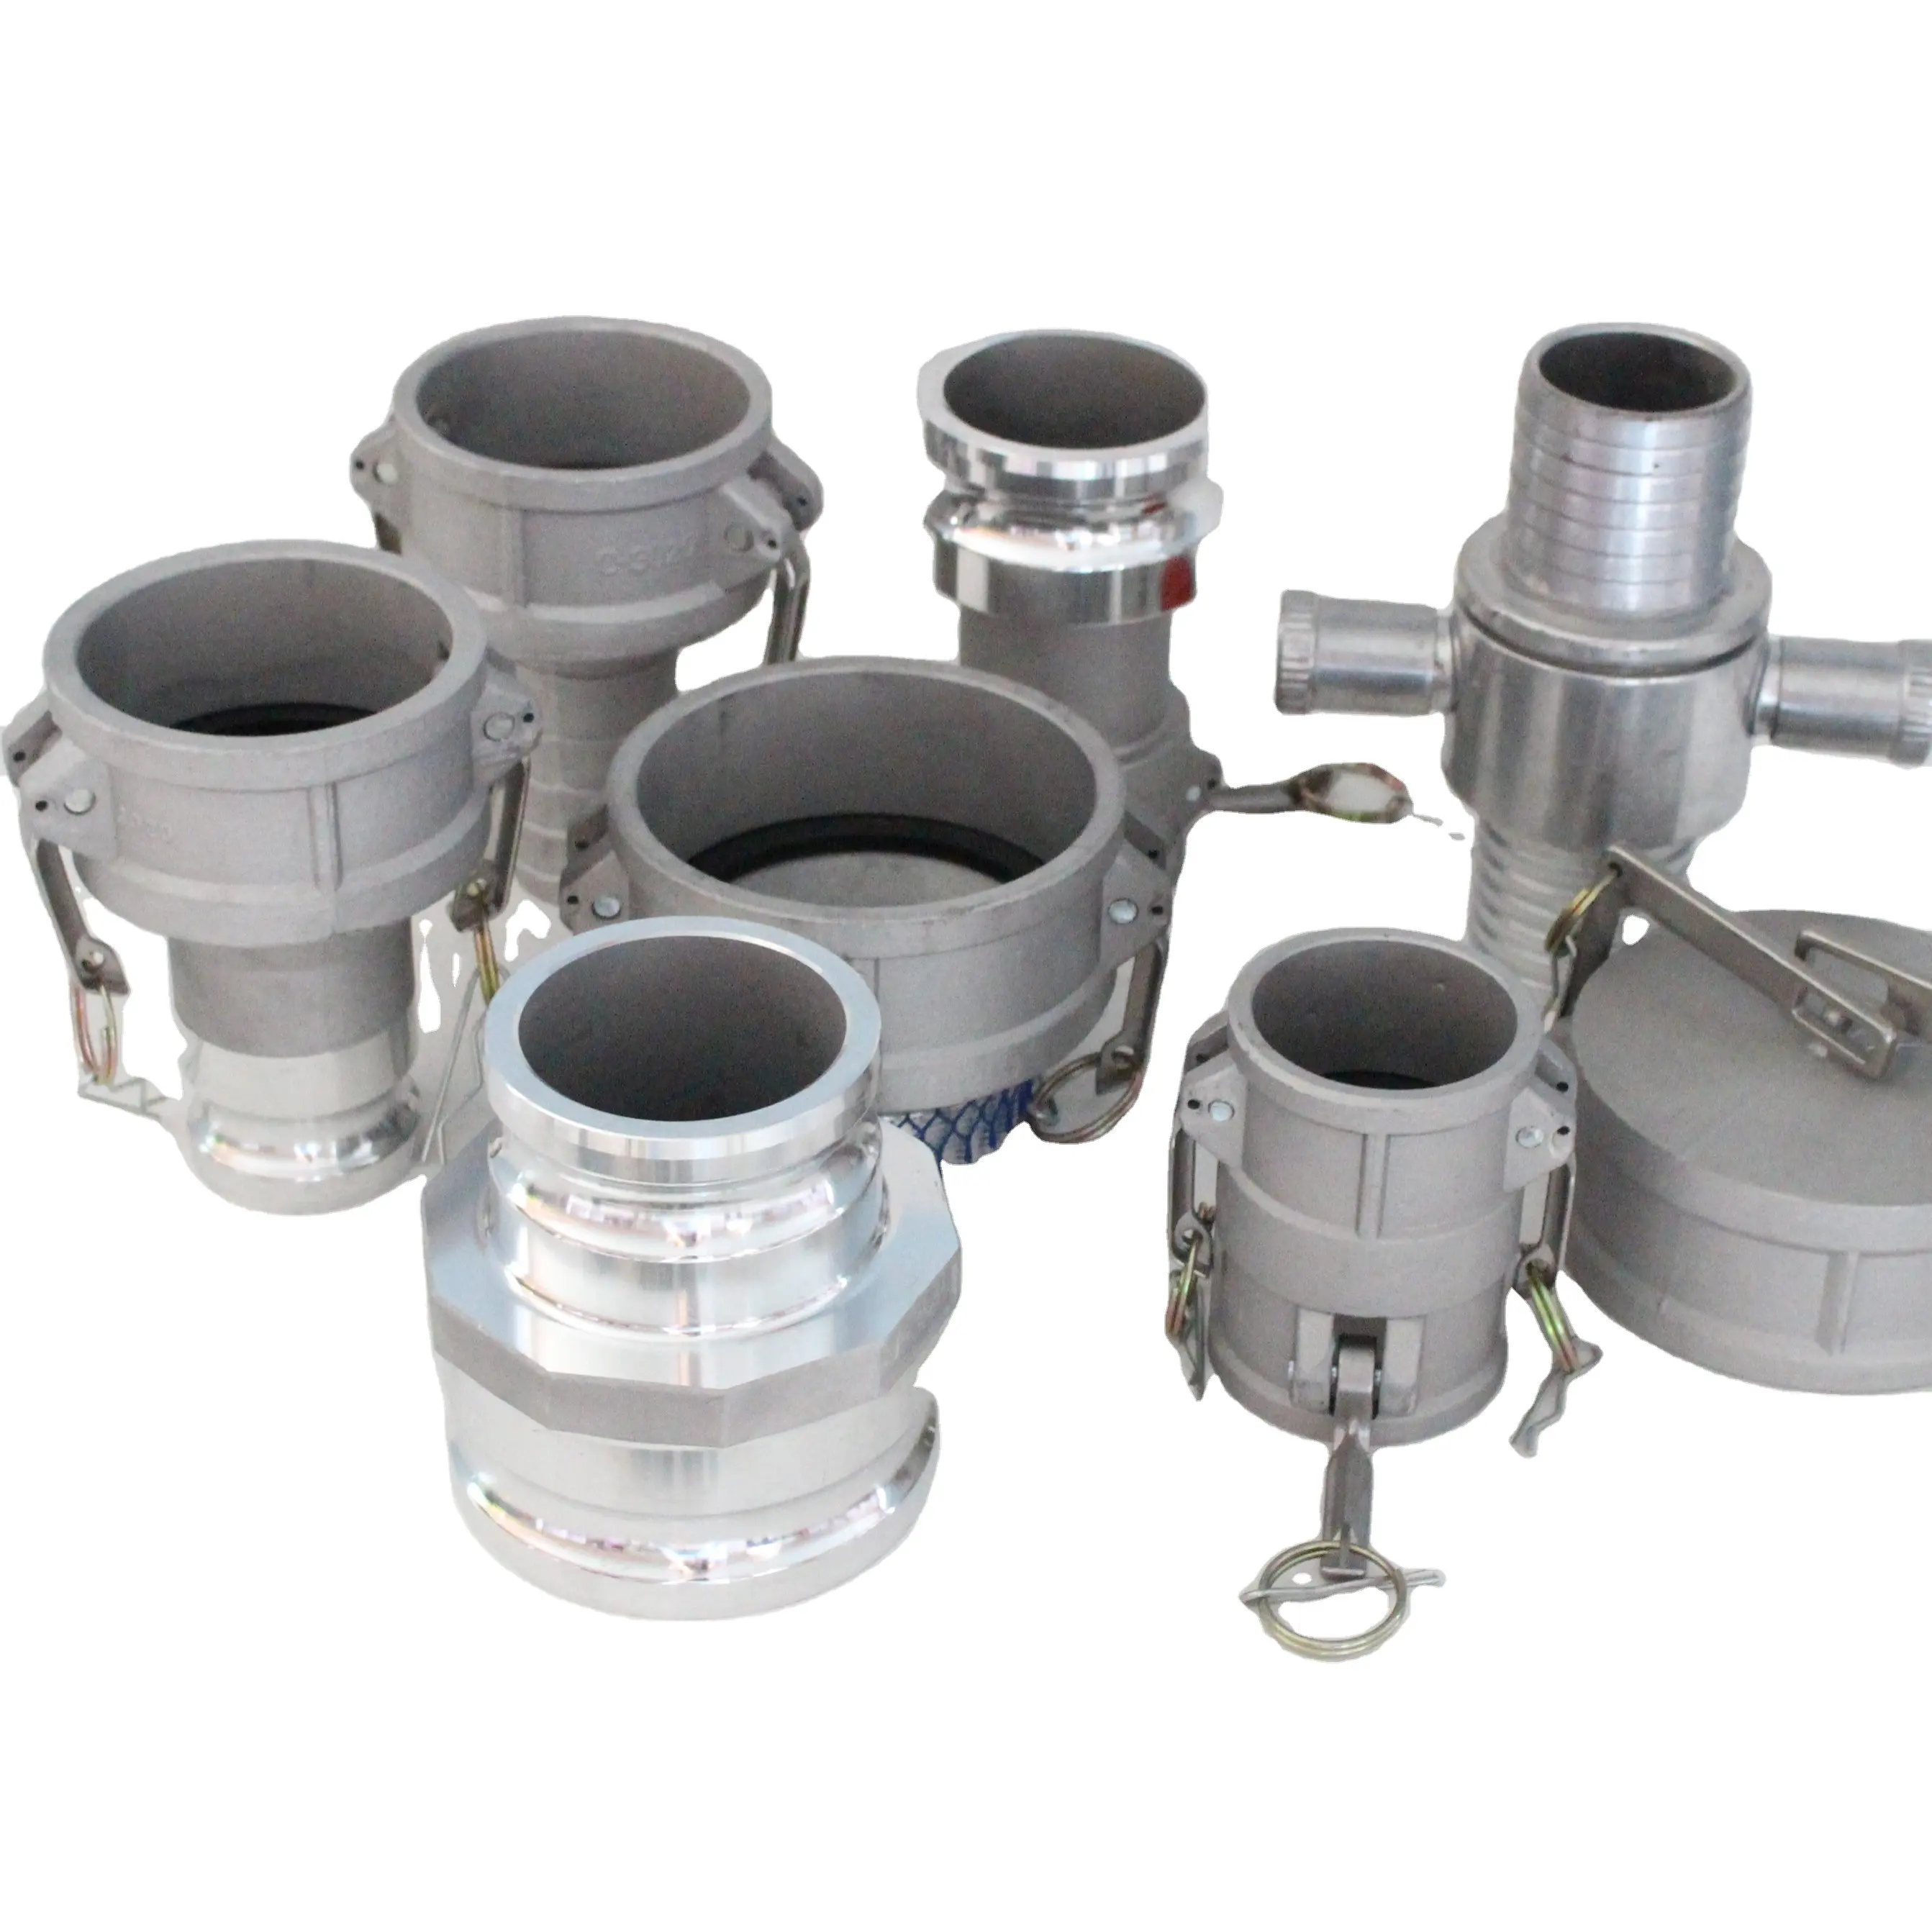 Raccordi per tubi di accoppiamento idraulico connettore rapido accoppiatore femmina X gambo del tubo riduttore Camlock in alluminio